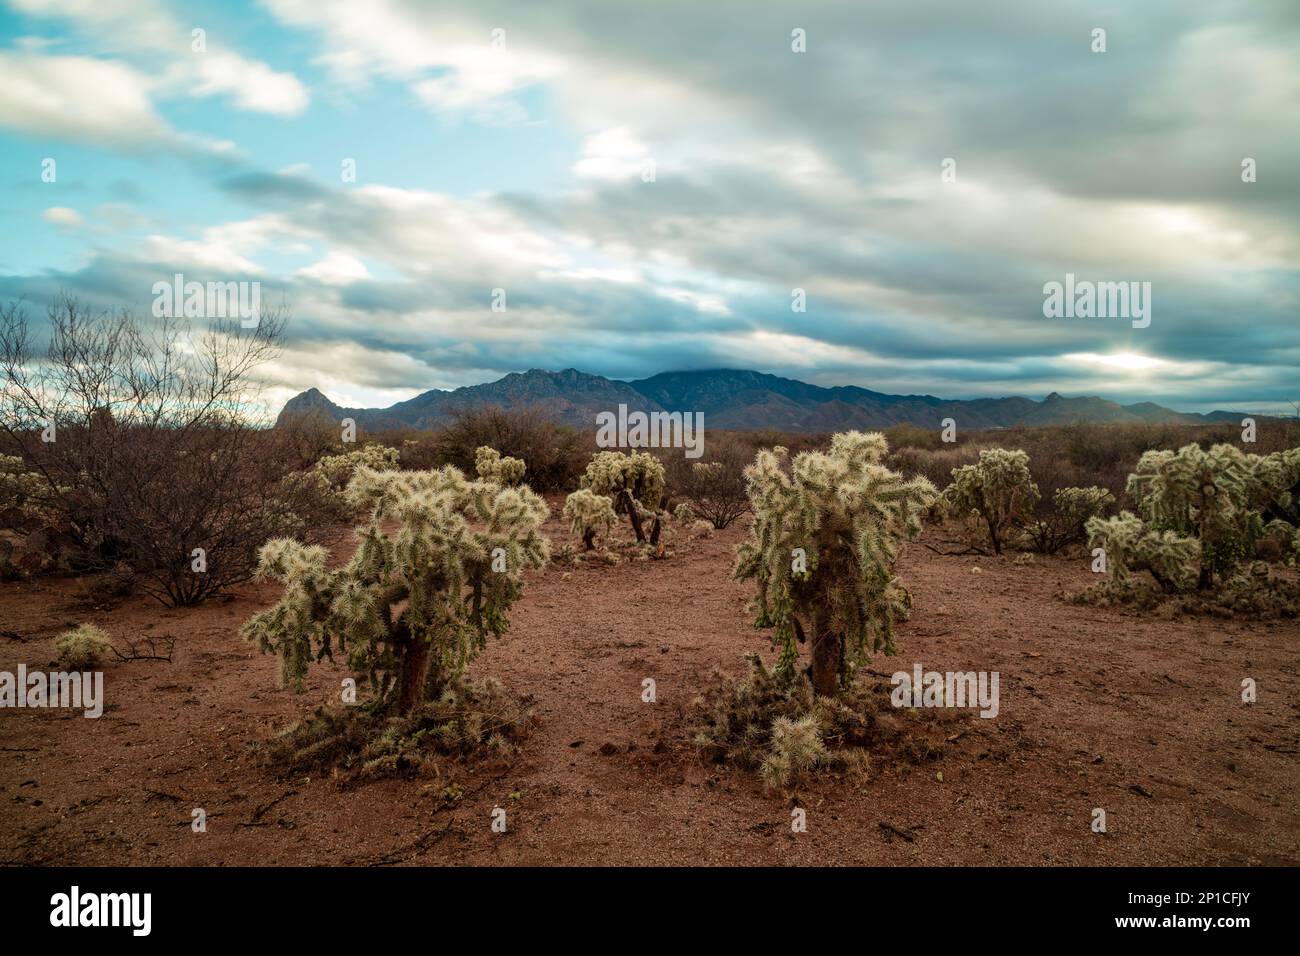 Teddy Bear Cholla Cacti bajo un cielo nublado por la mañana en el desierto de Sonora cerca de Amado, Arizona. Mt. Wrightson y las montañas de Santa Rita se ven. Foto de stock